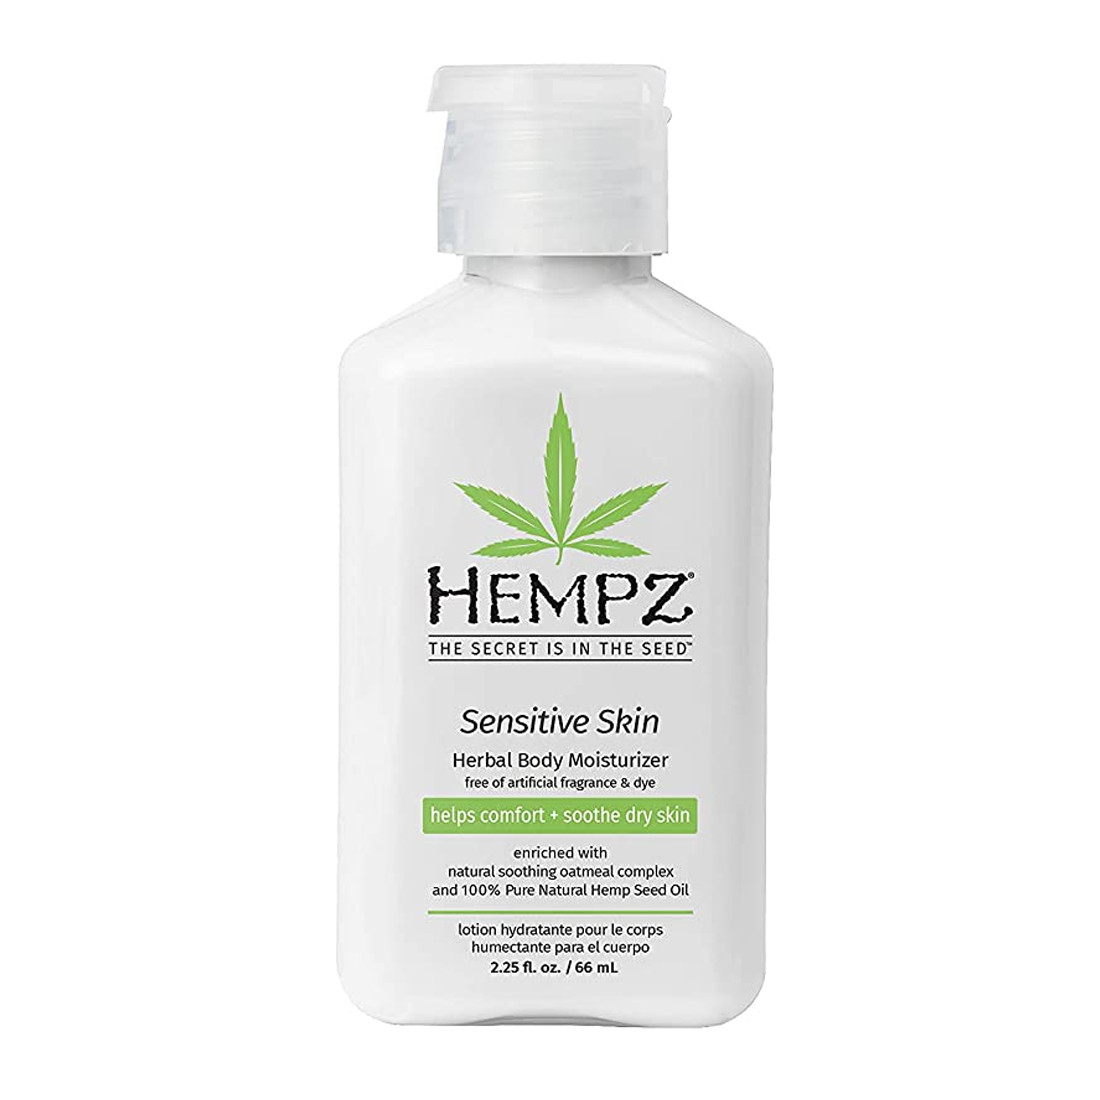 Відгуки про Hempz Sensitive Skin Herbal Body Moisturizer - Растительный увлажняющий лосьон для чувствительной кожи